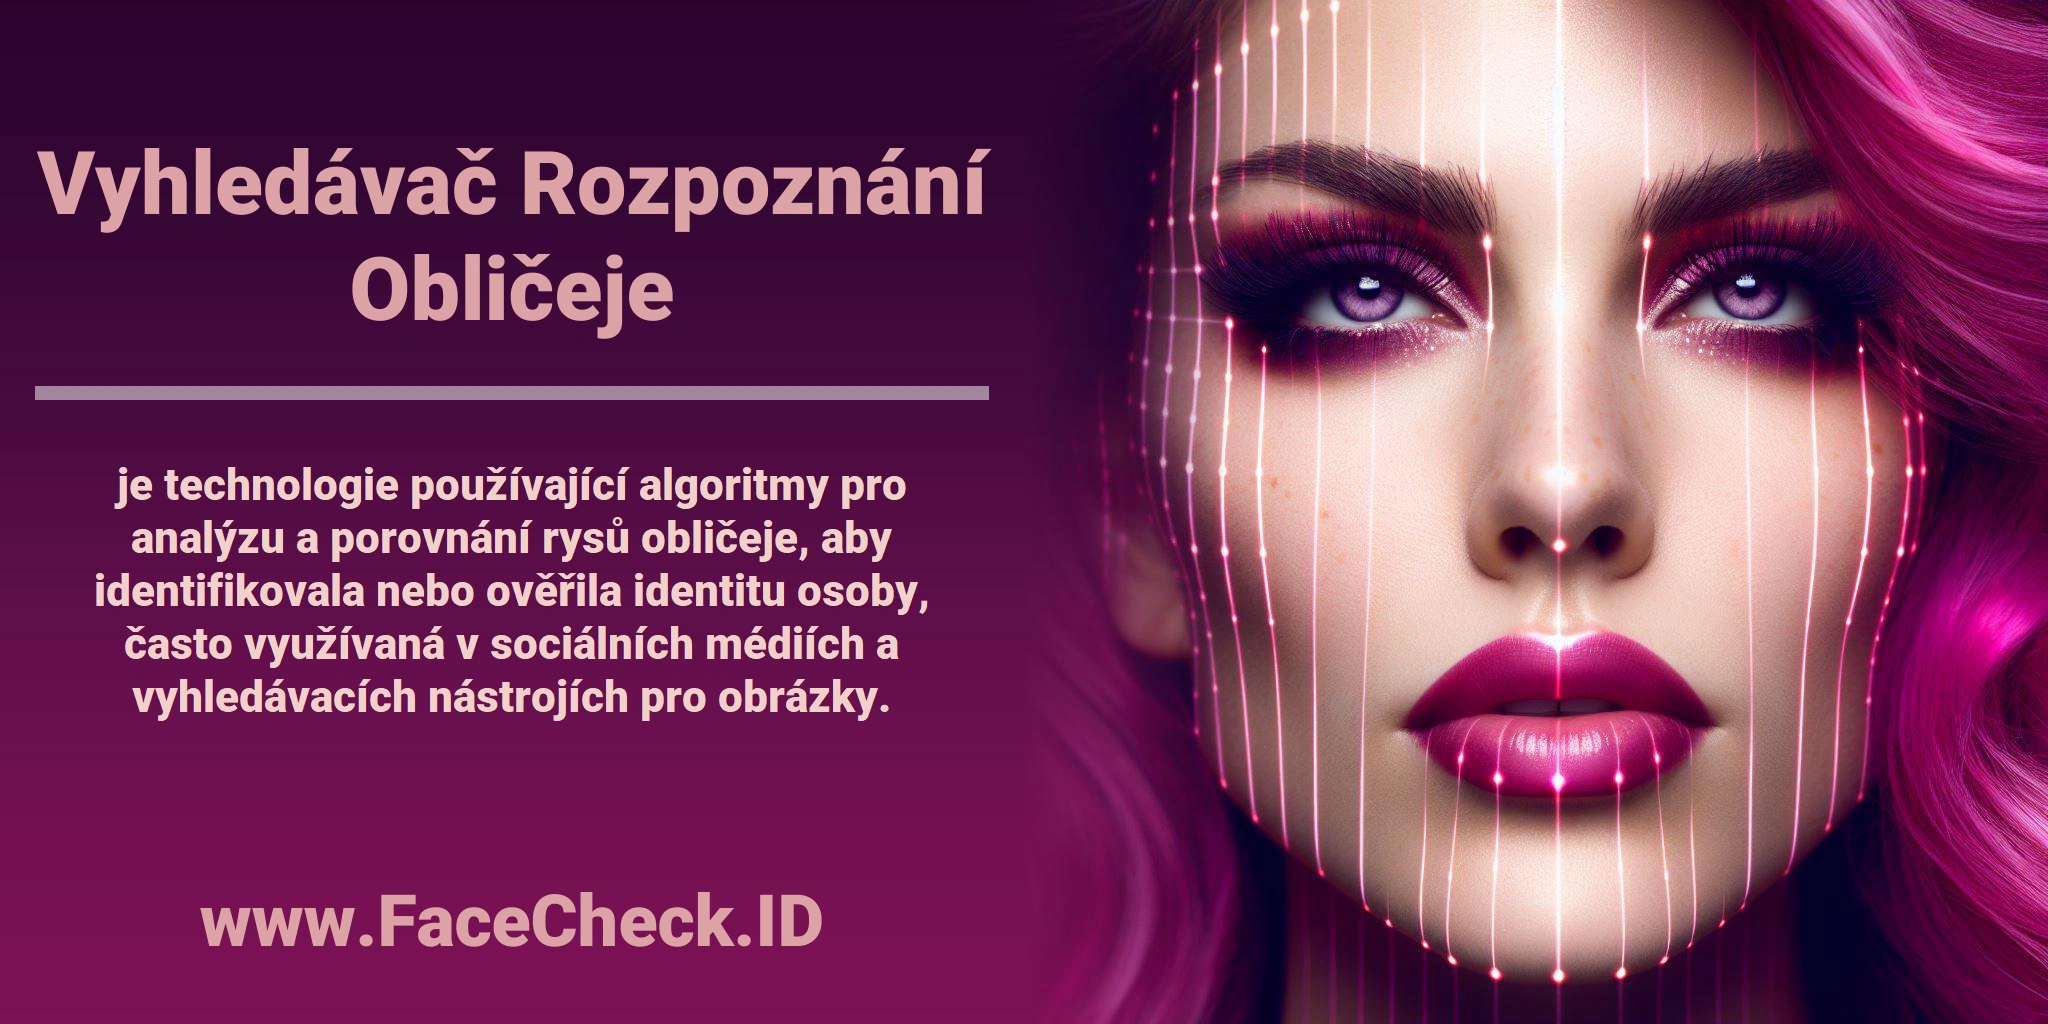 <b>Vyhledávač Rozpoznání Obličeje</b> je technologie používající algoritmy pro analýzu a porovnání rysů obličeje, aby identifikovala nebo ověřila identitu osoby, často využívaná v sociálních médiích a vyhledávacích nástrojích pro obrázky.